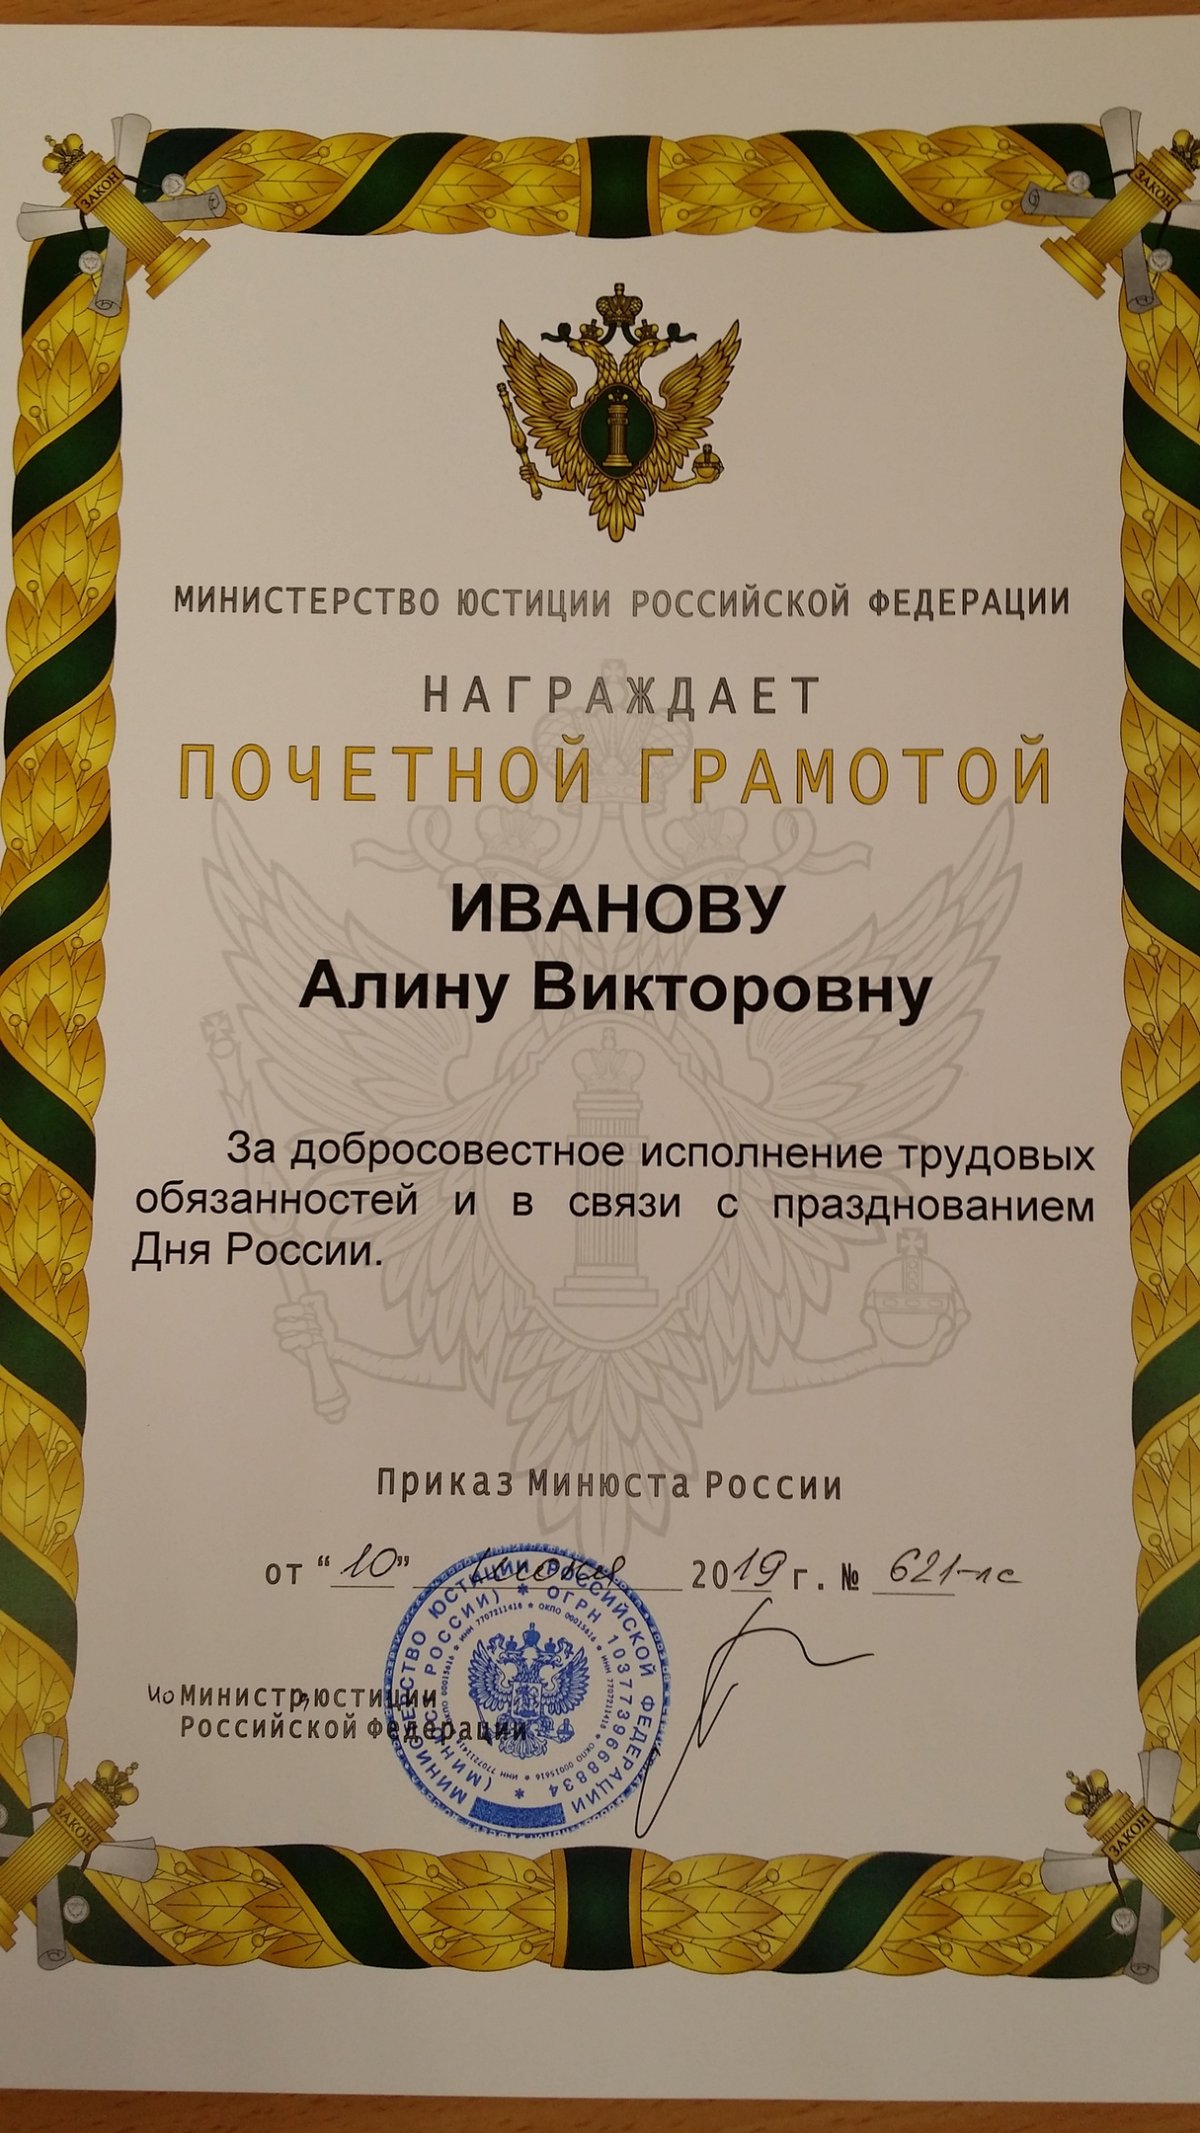 Поздравляем Алину Викторовну Иванову с наградой!